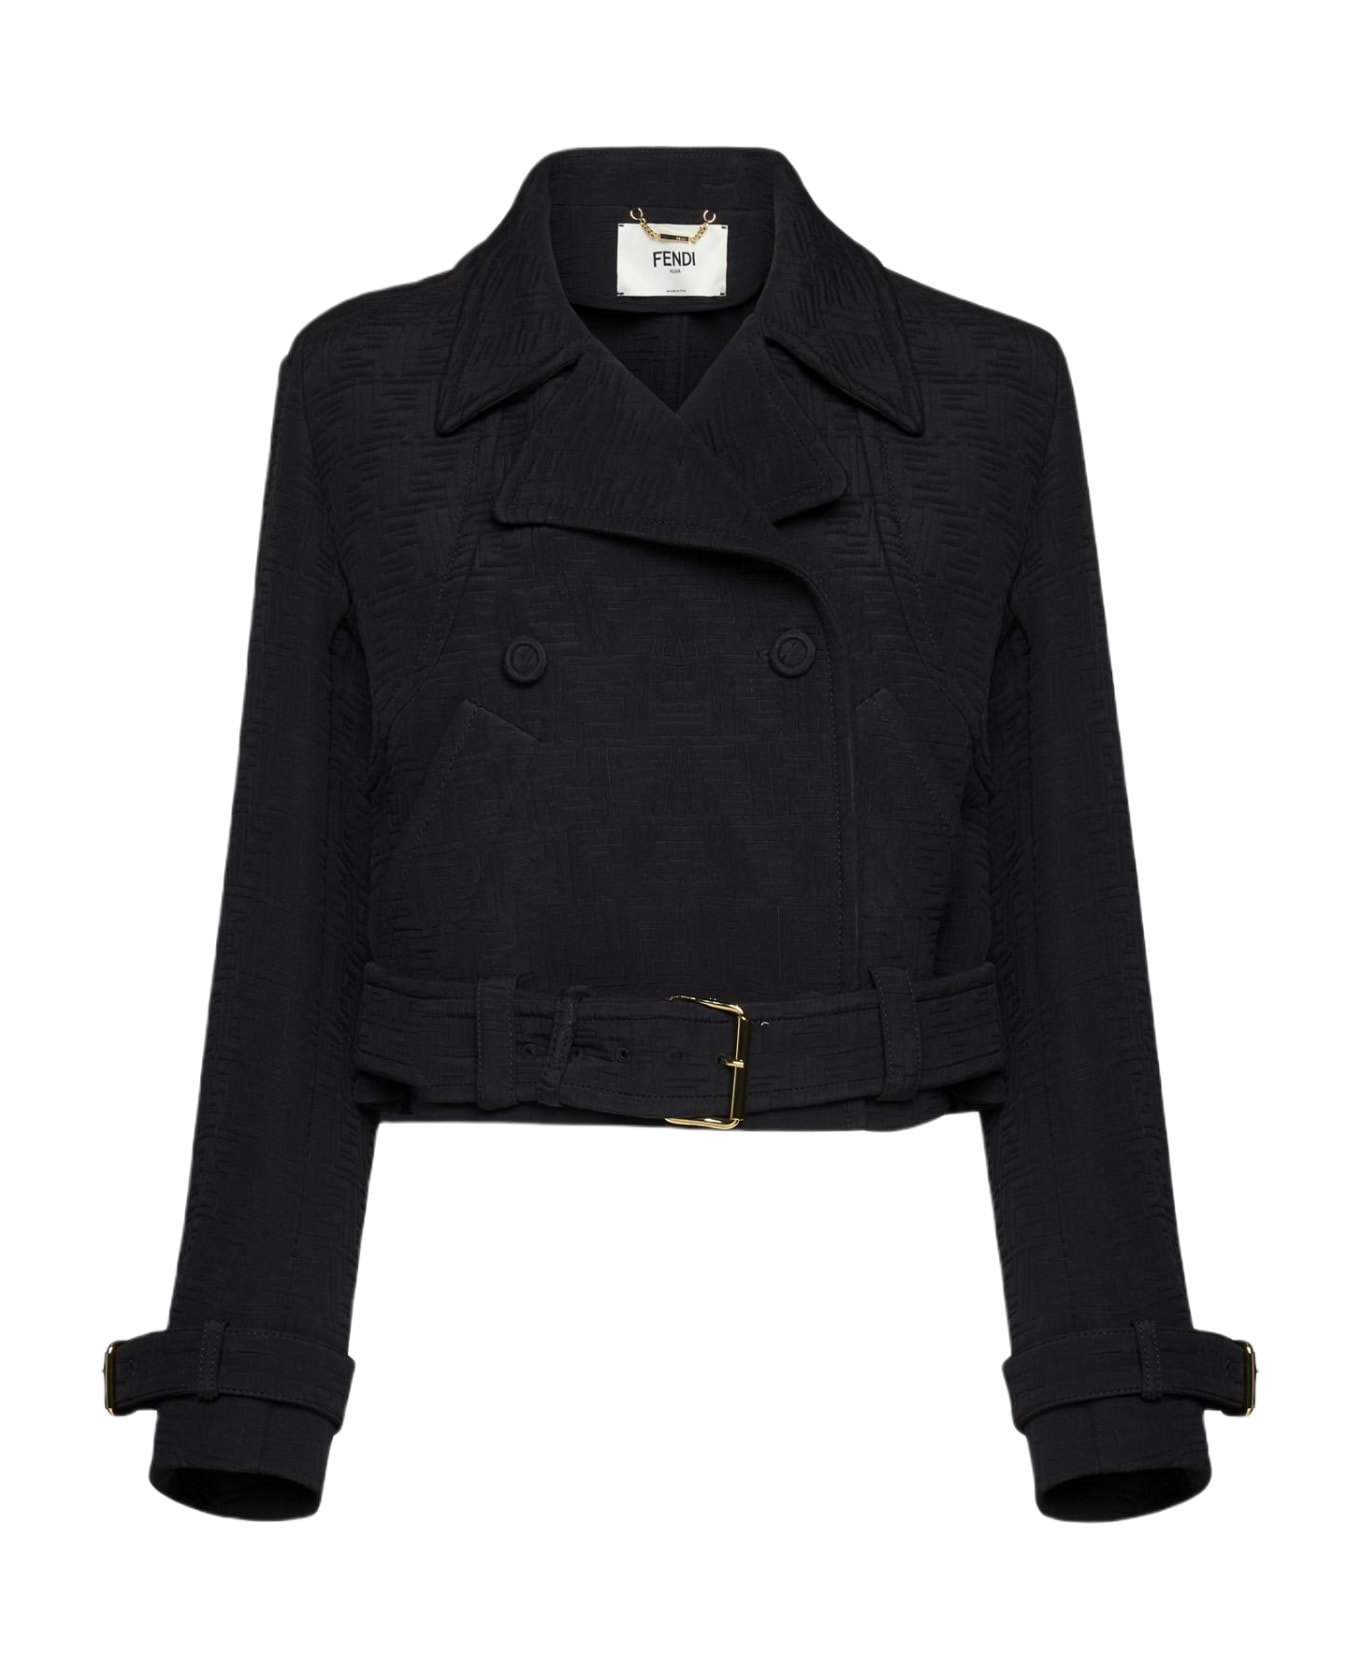 Fendi Jacket With Monogram - Black ジャケット